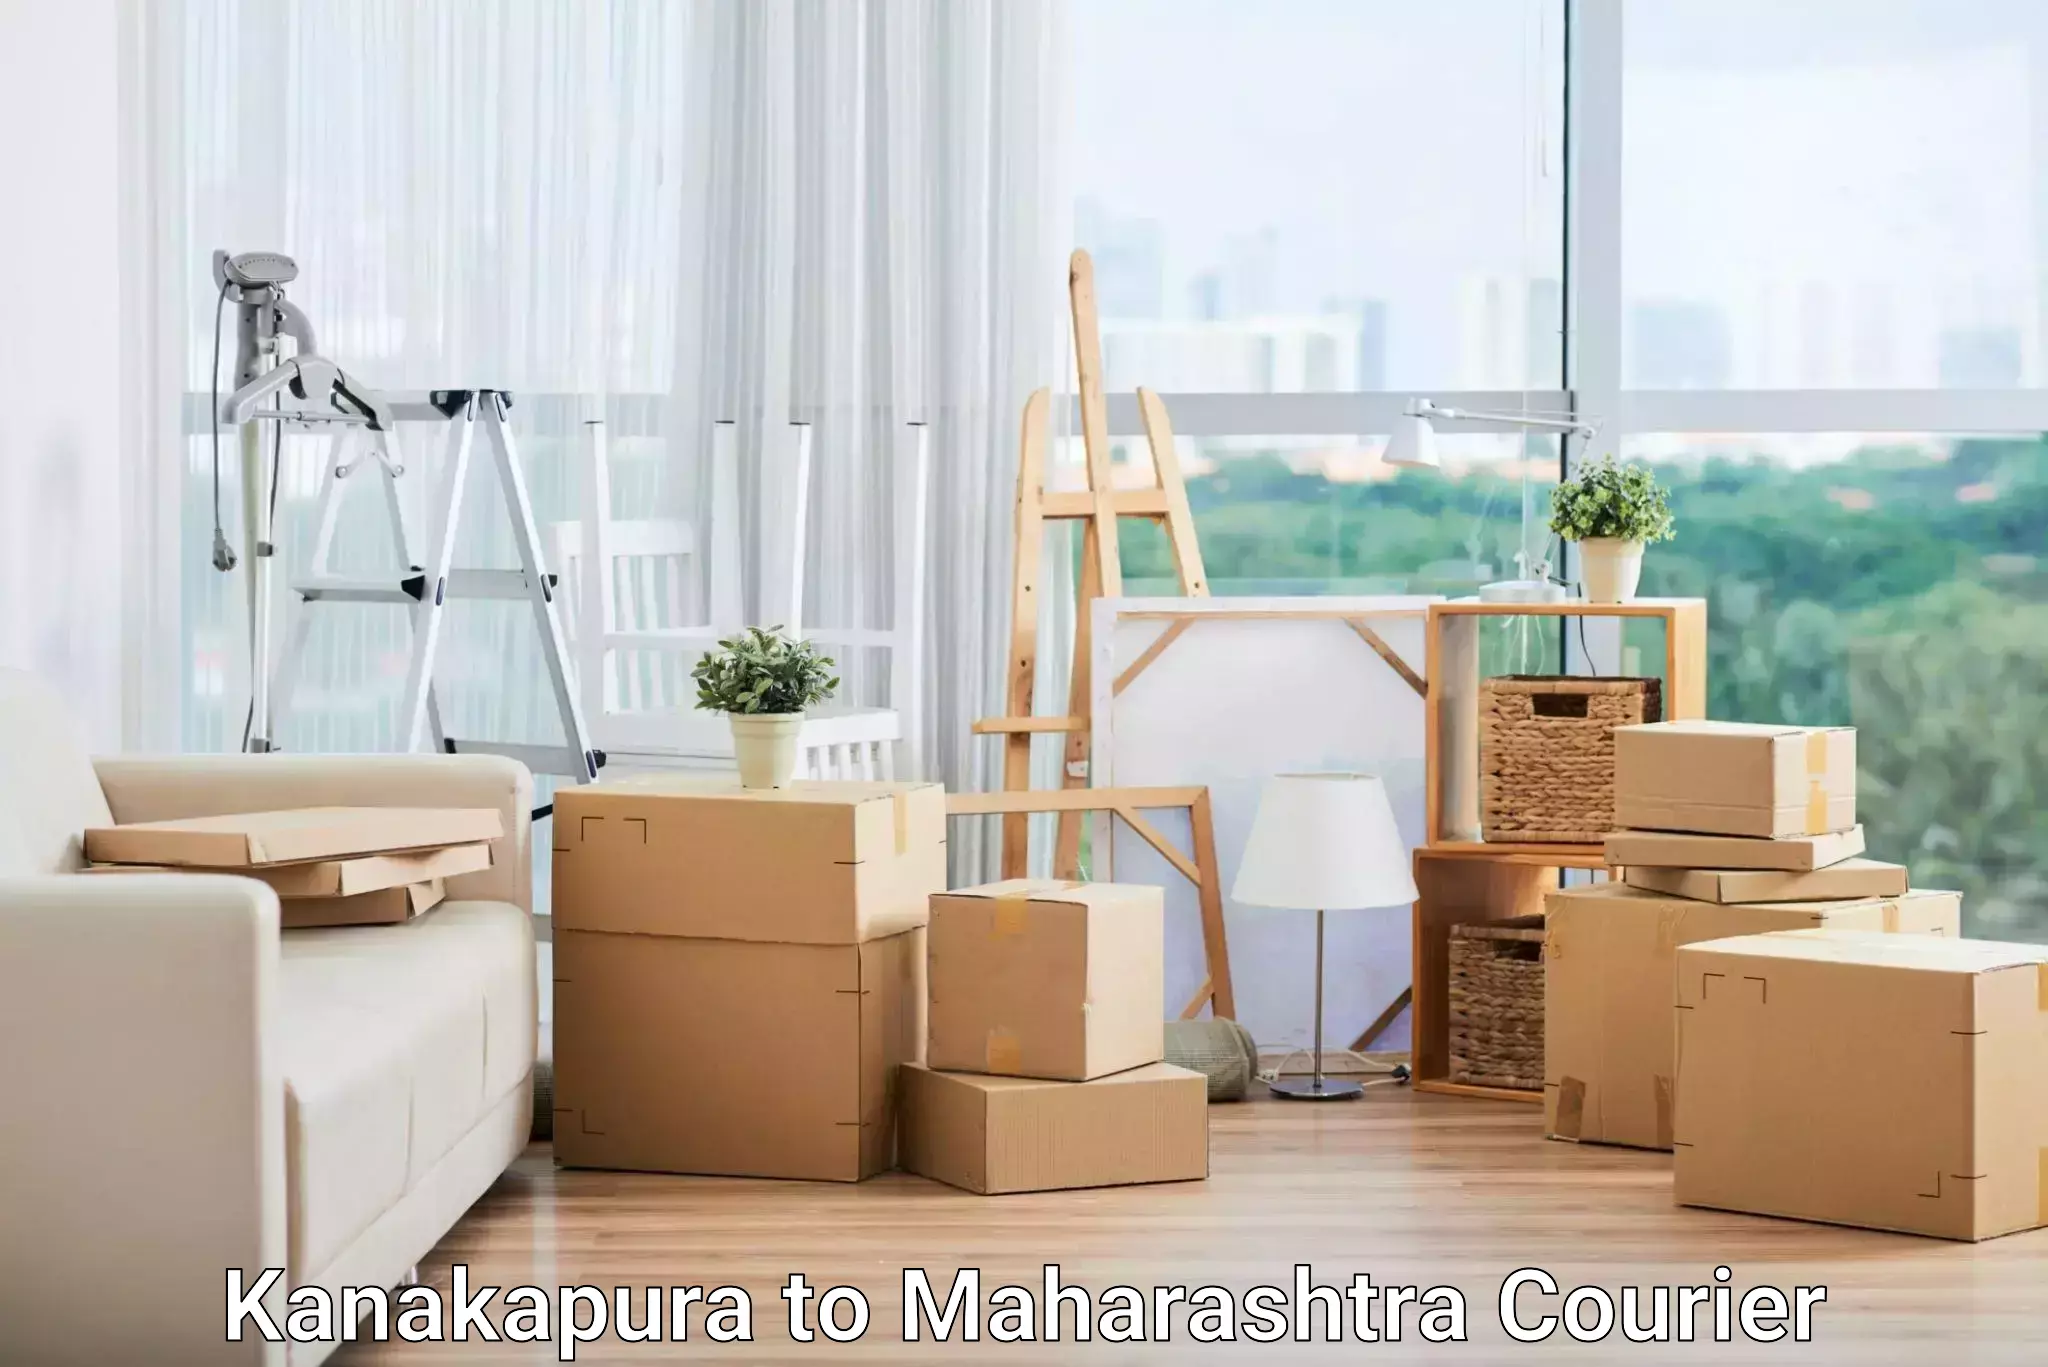 Supply chain efficiency Kanakapura to Mahim